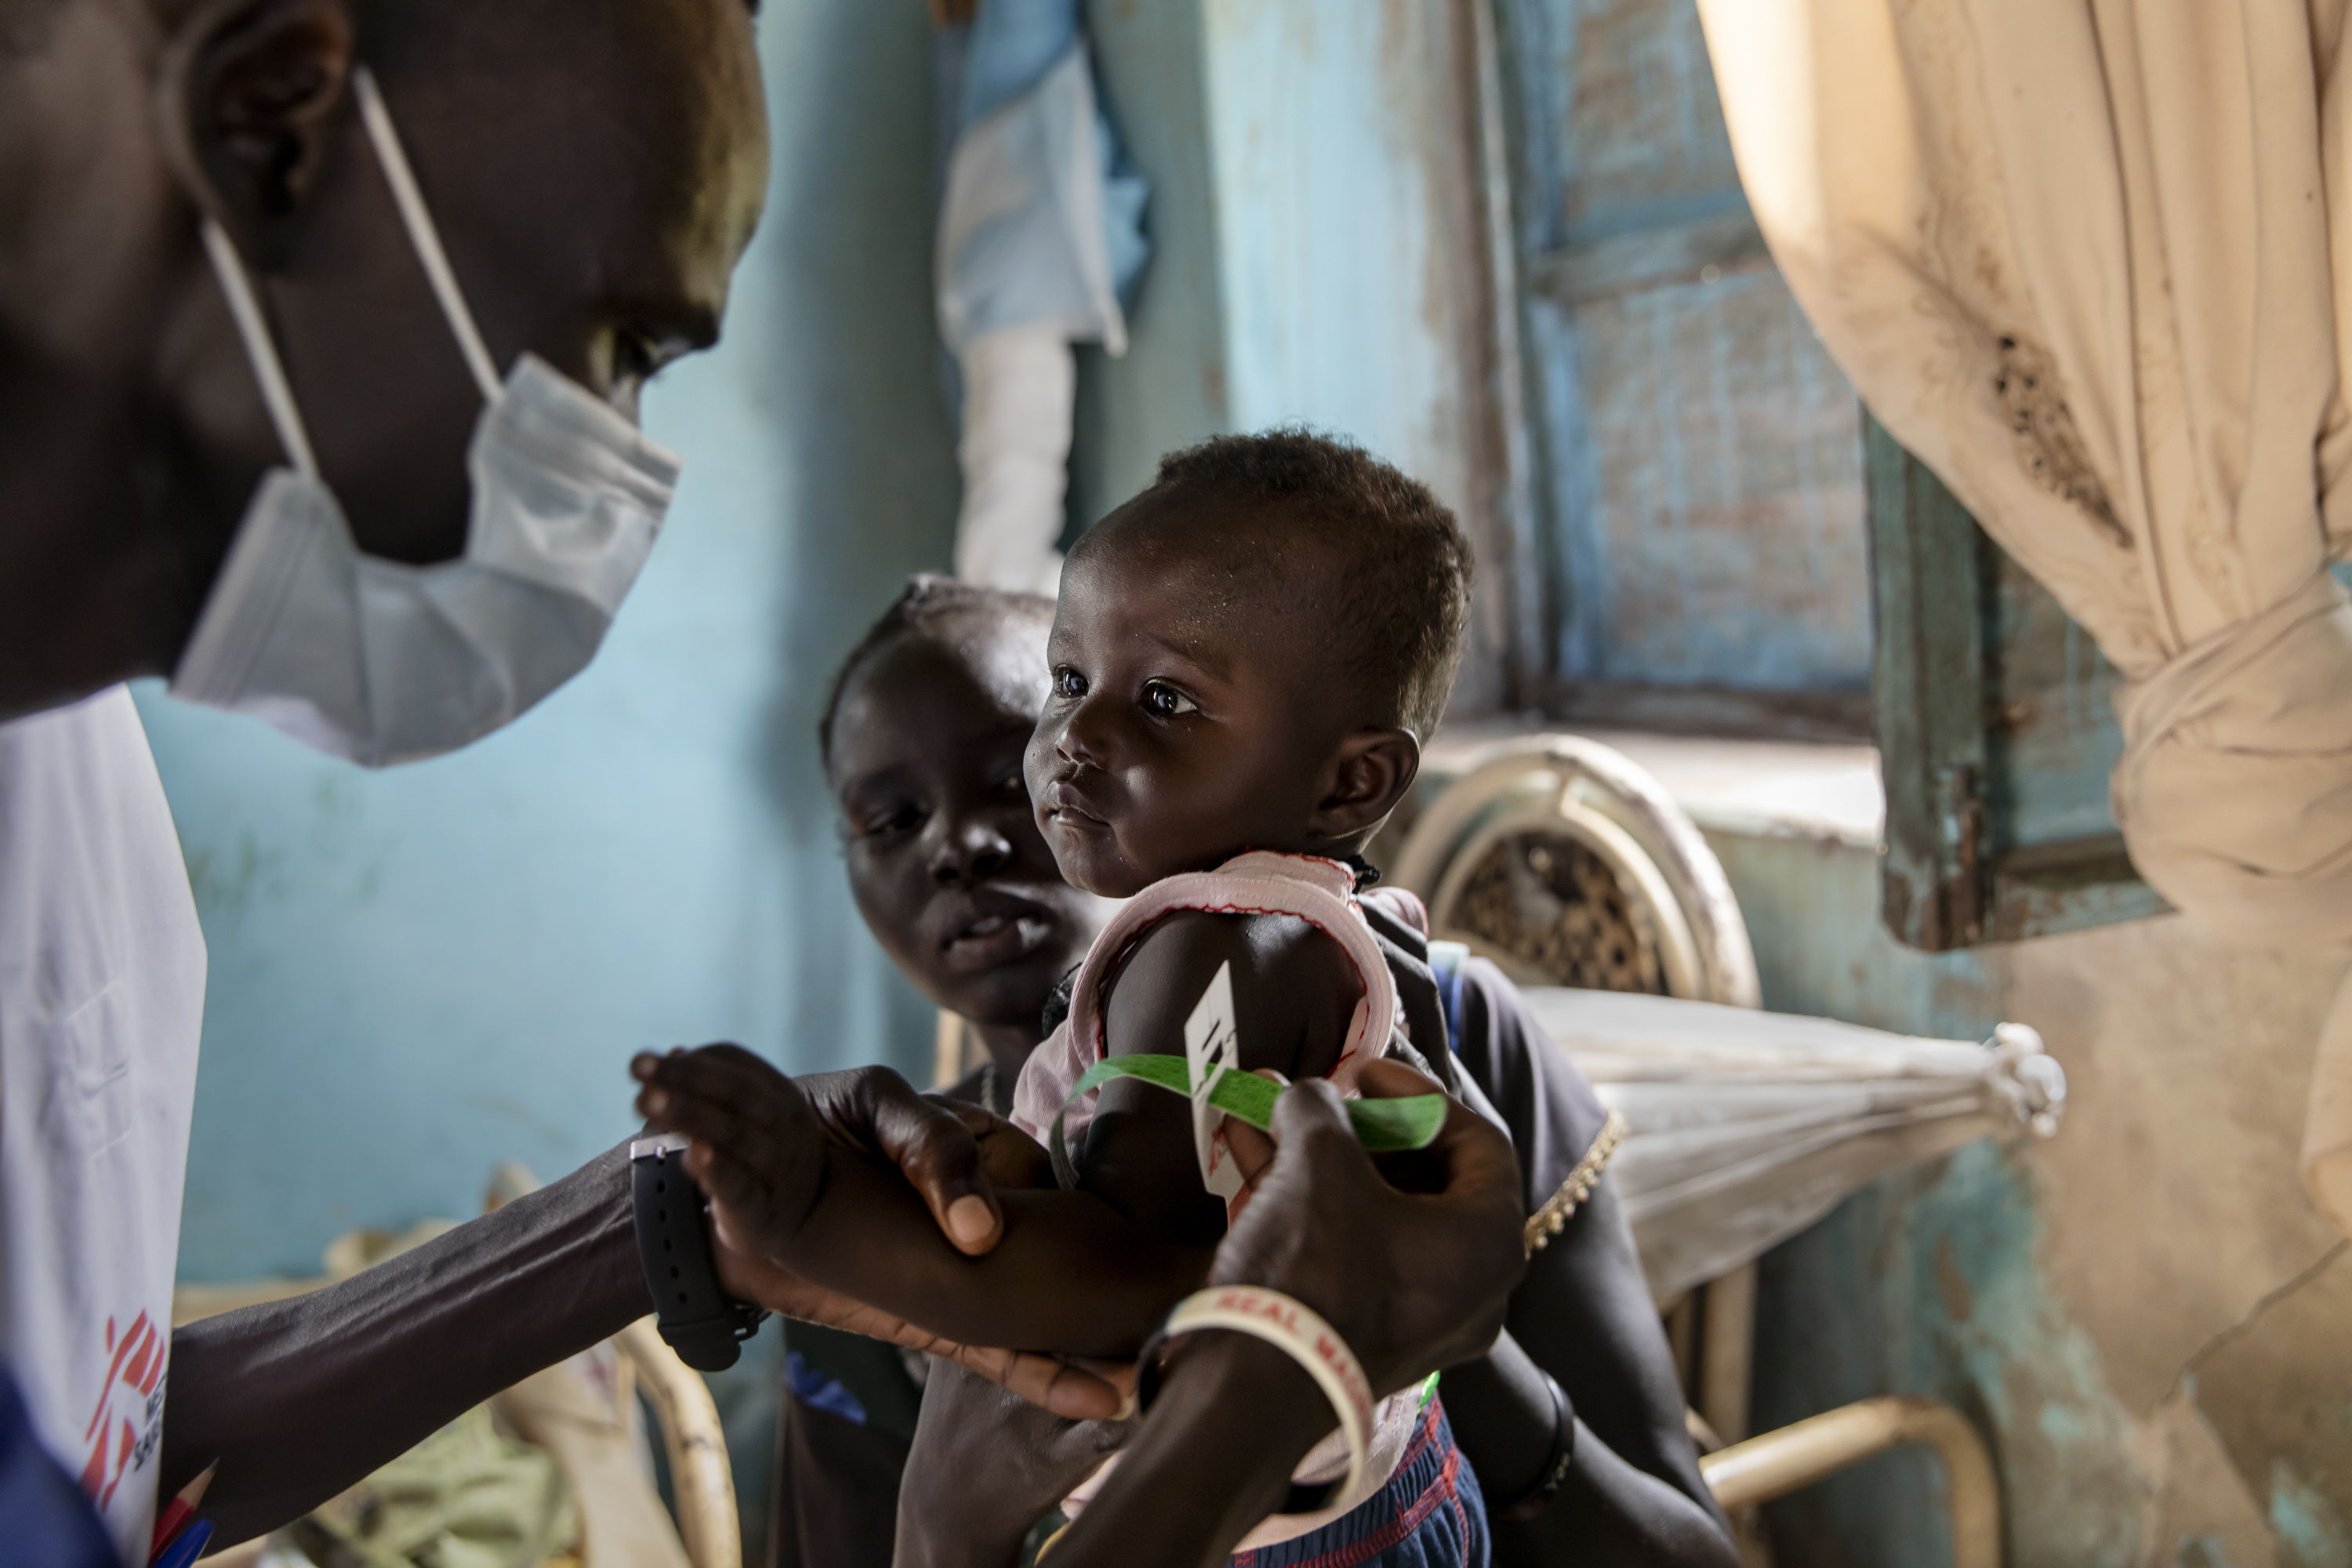 Ajok Atak, sostiene a su hijo Yel mientras un miembro del personal de MSF mide el nivel de nutrición del niño en su casa cerca de Kuom, Sudán del Sur. © Adrienne Surprenant